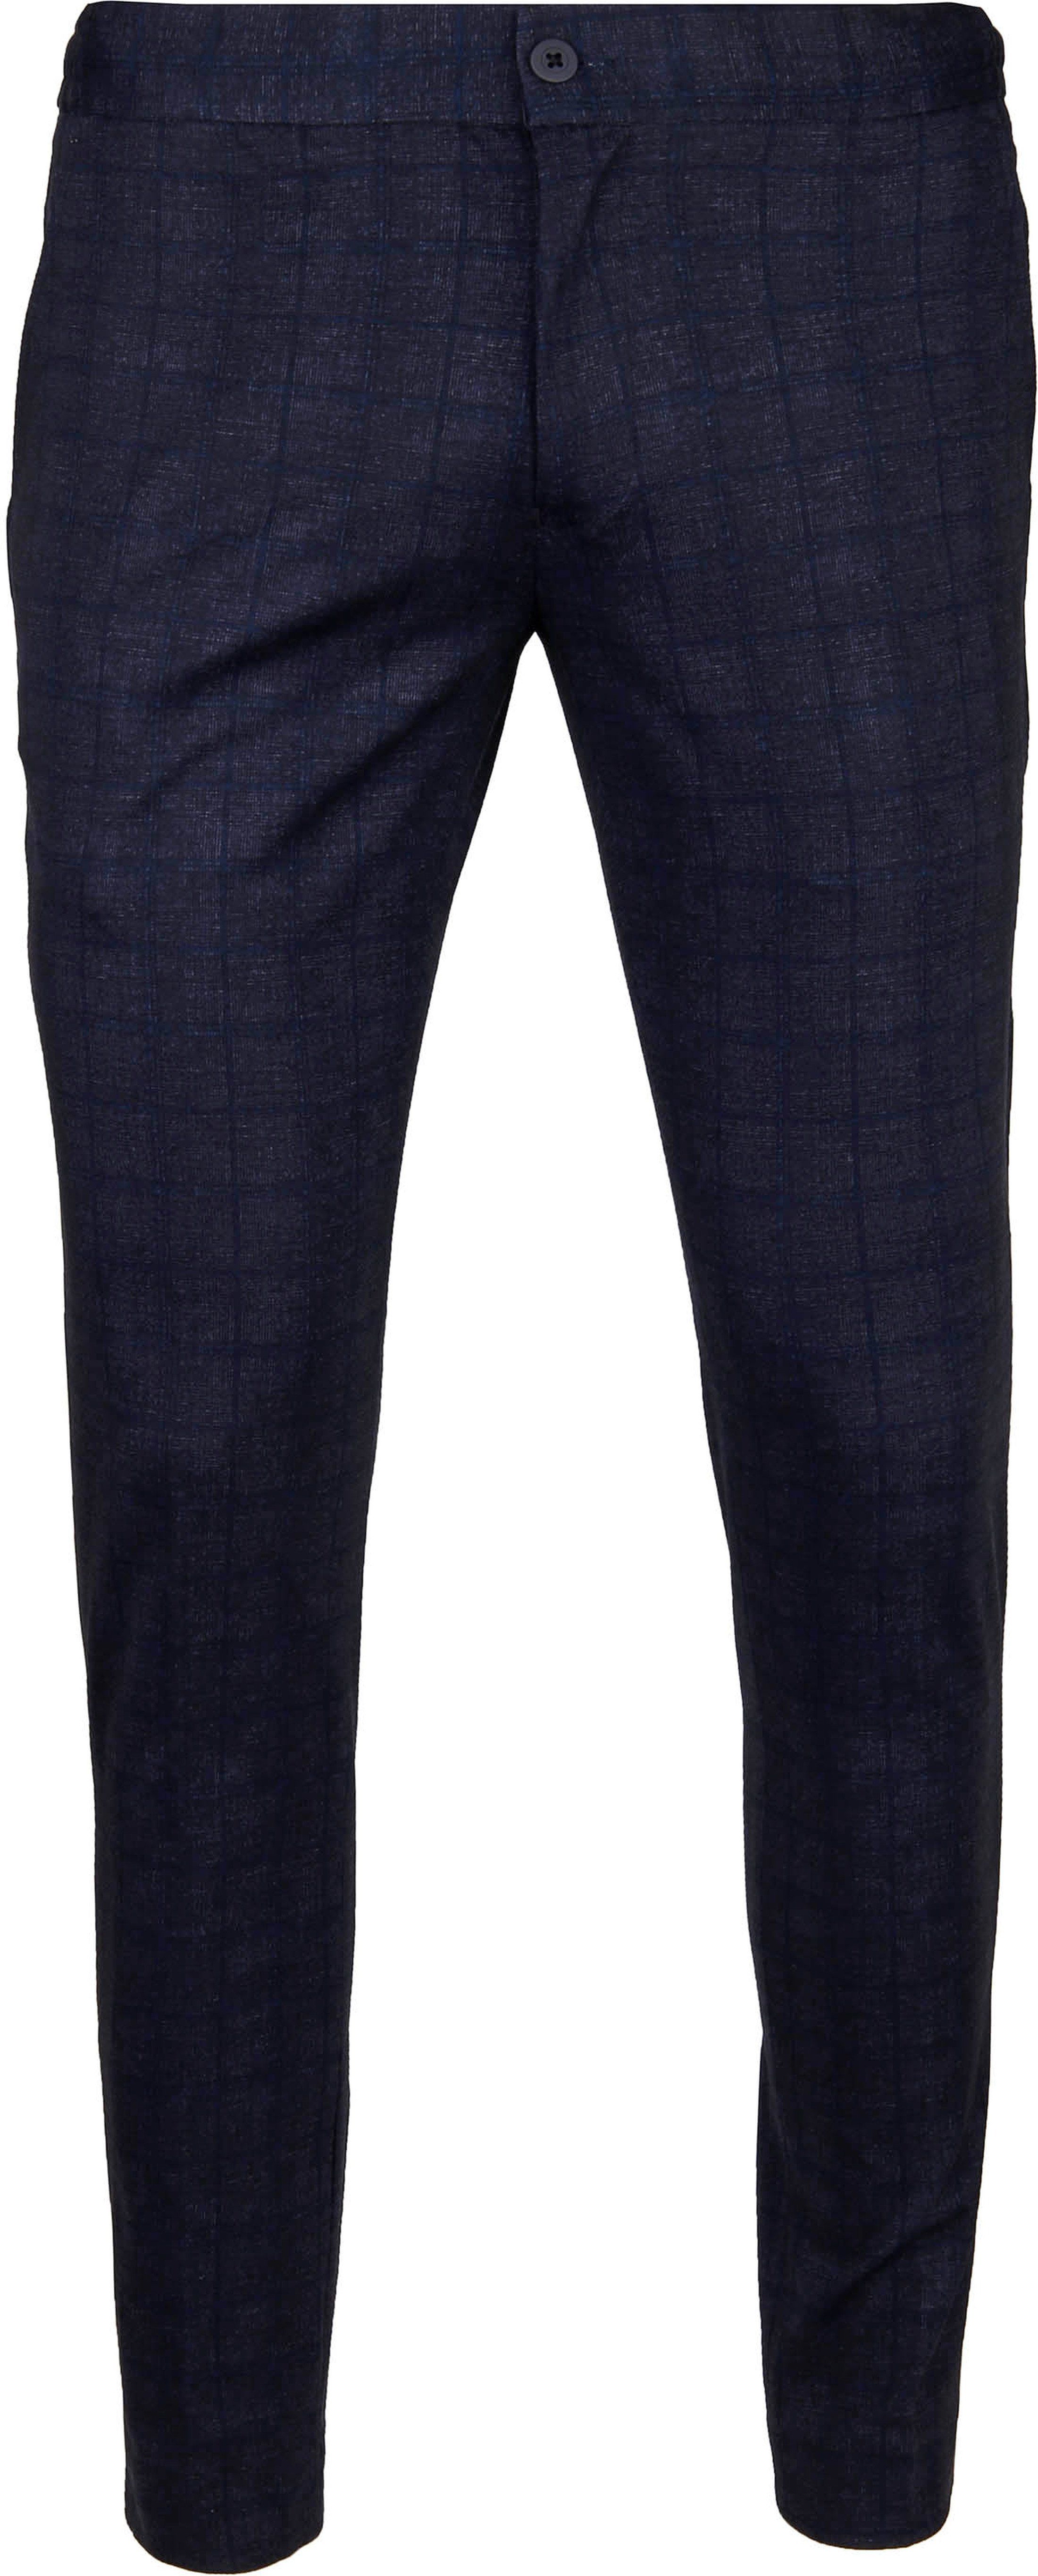 Suitable Respect Jog Trousers Navy Dark Blue Blue size W 32/33